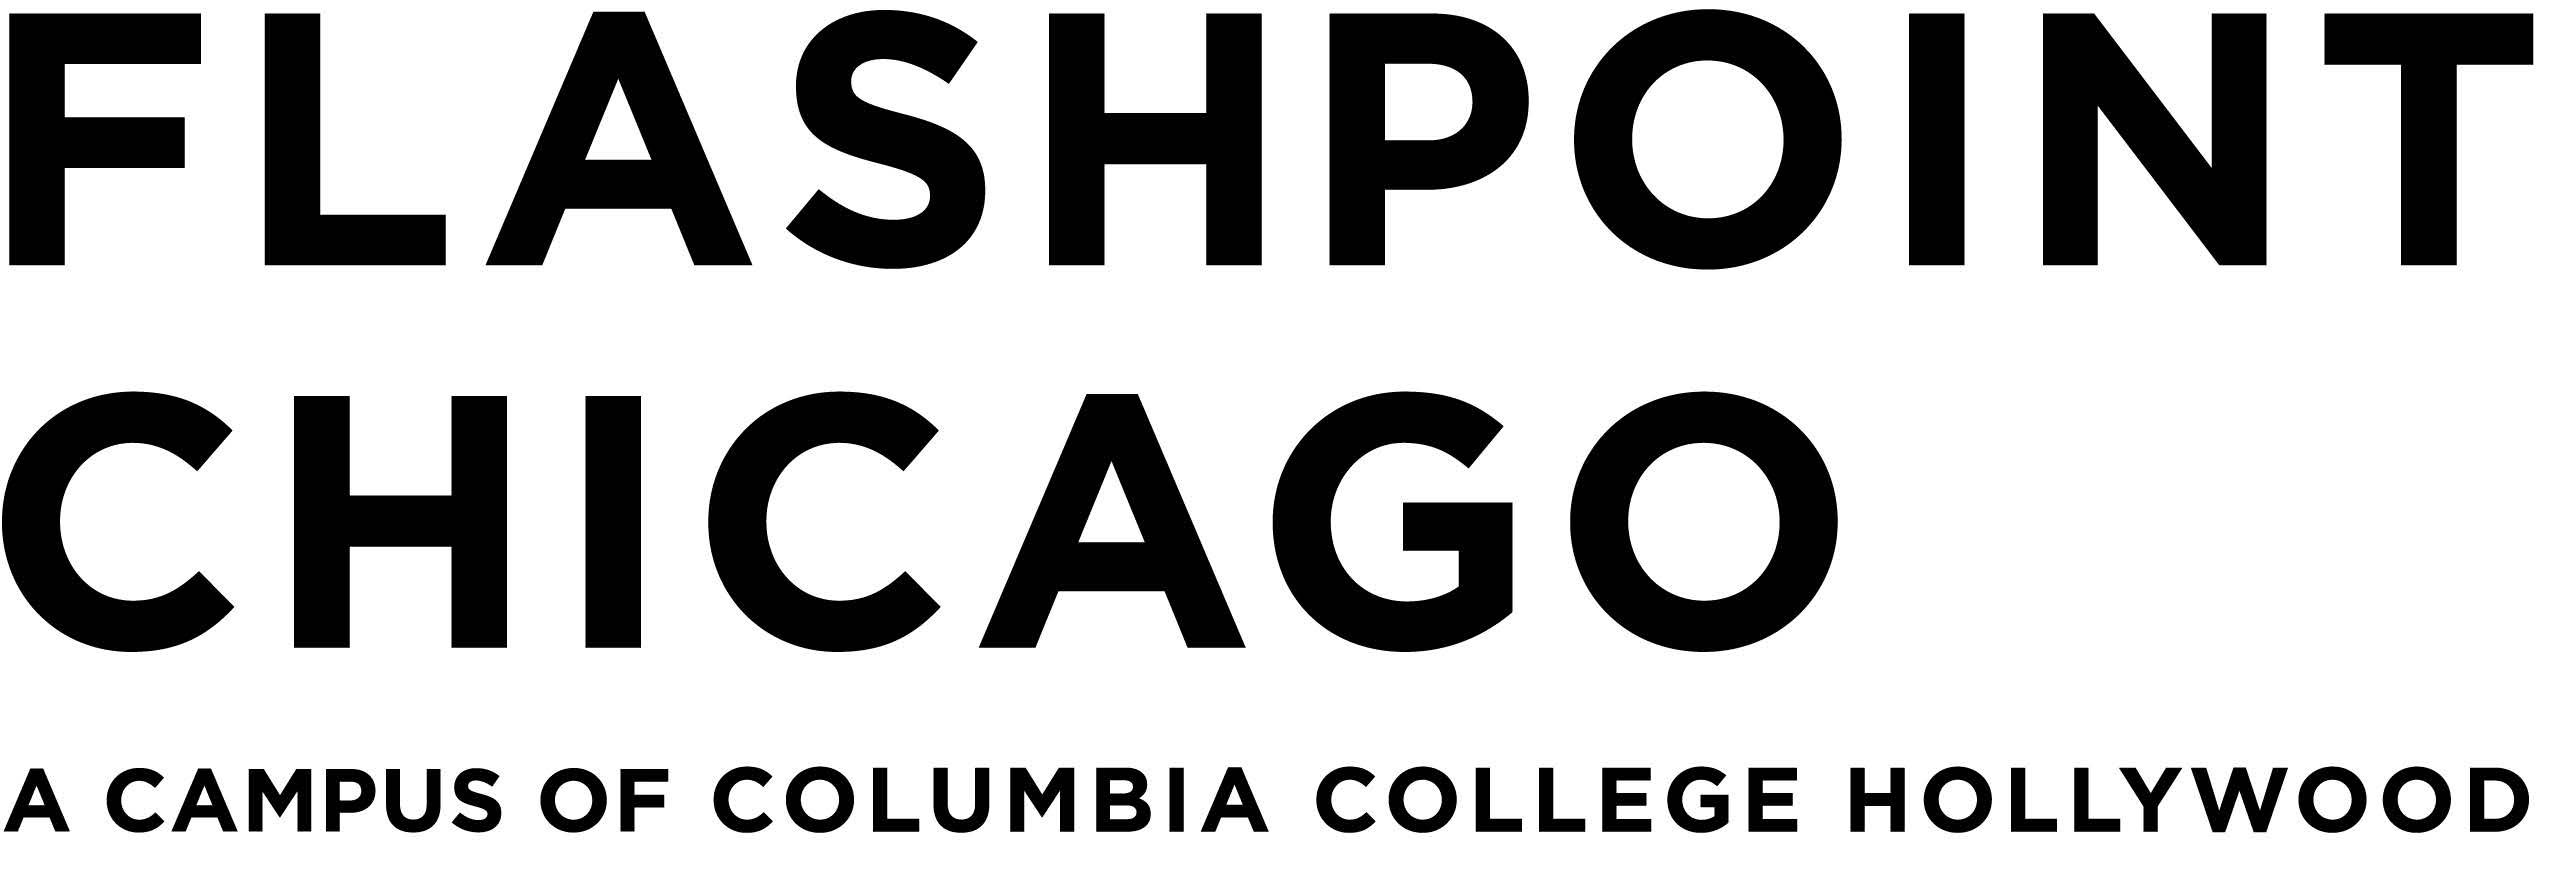 Flashpoint Chicago logo